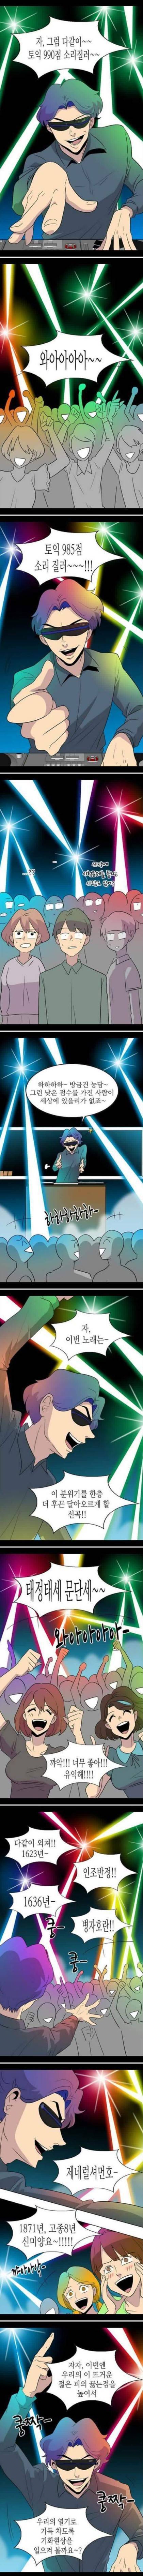 서울대학교 클럽 분위기..jpg | 인스티즈